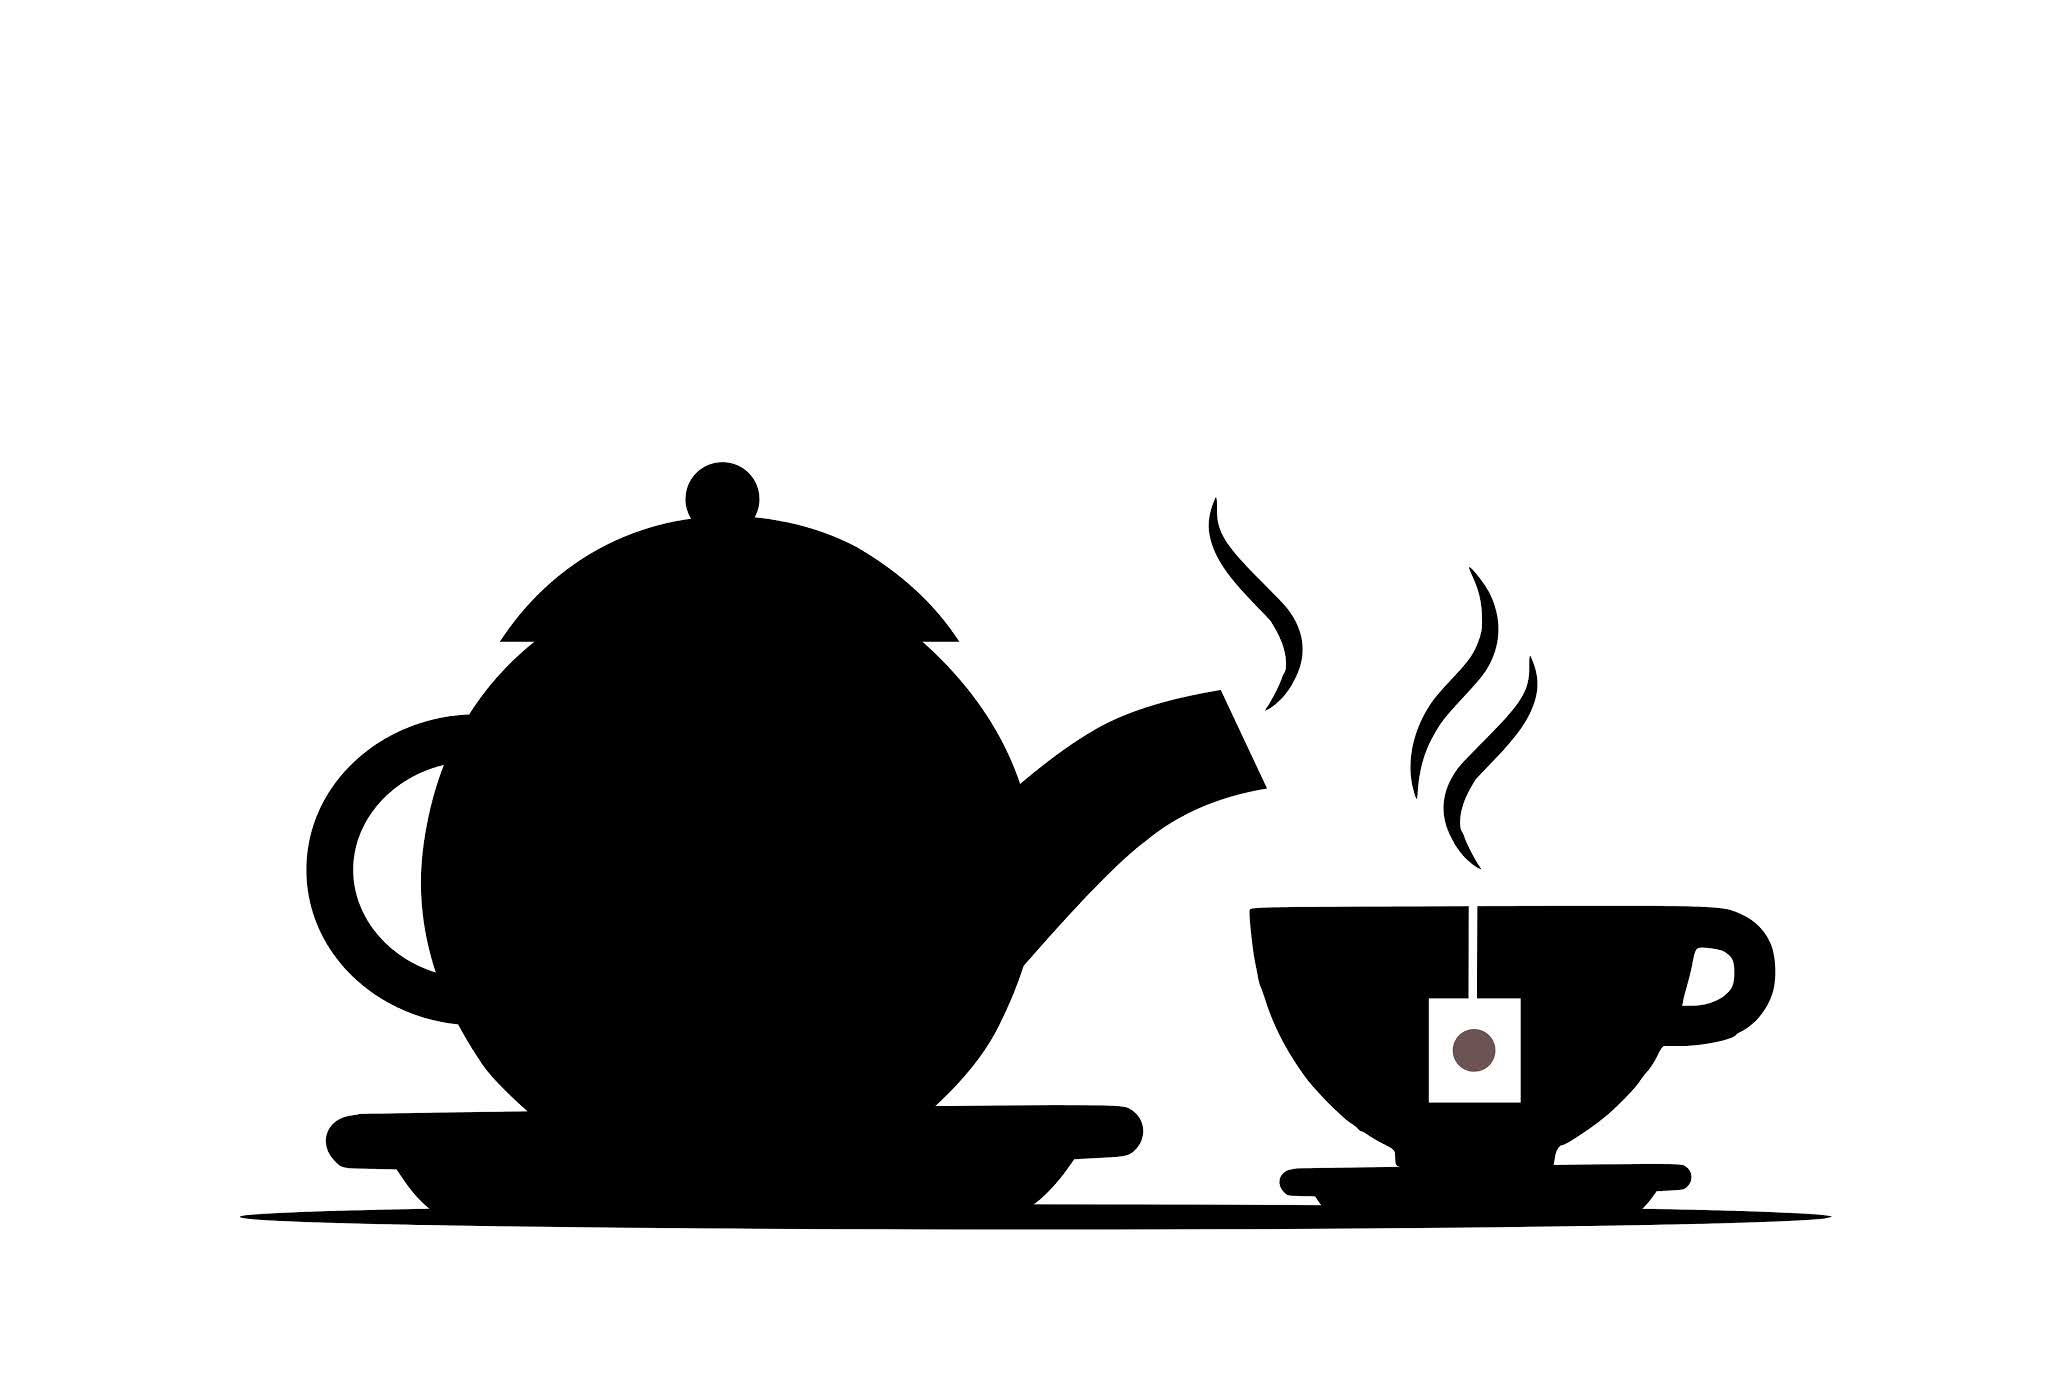 Hot tea cup Silhouette design